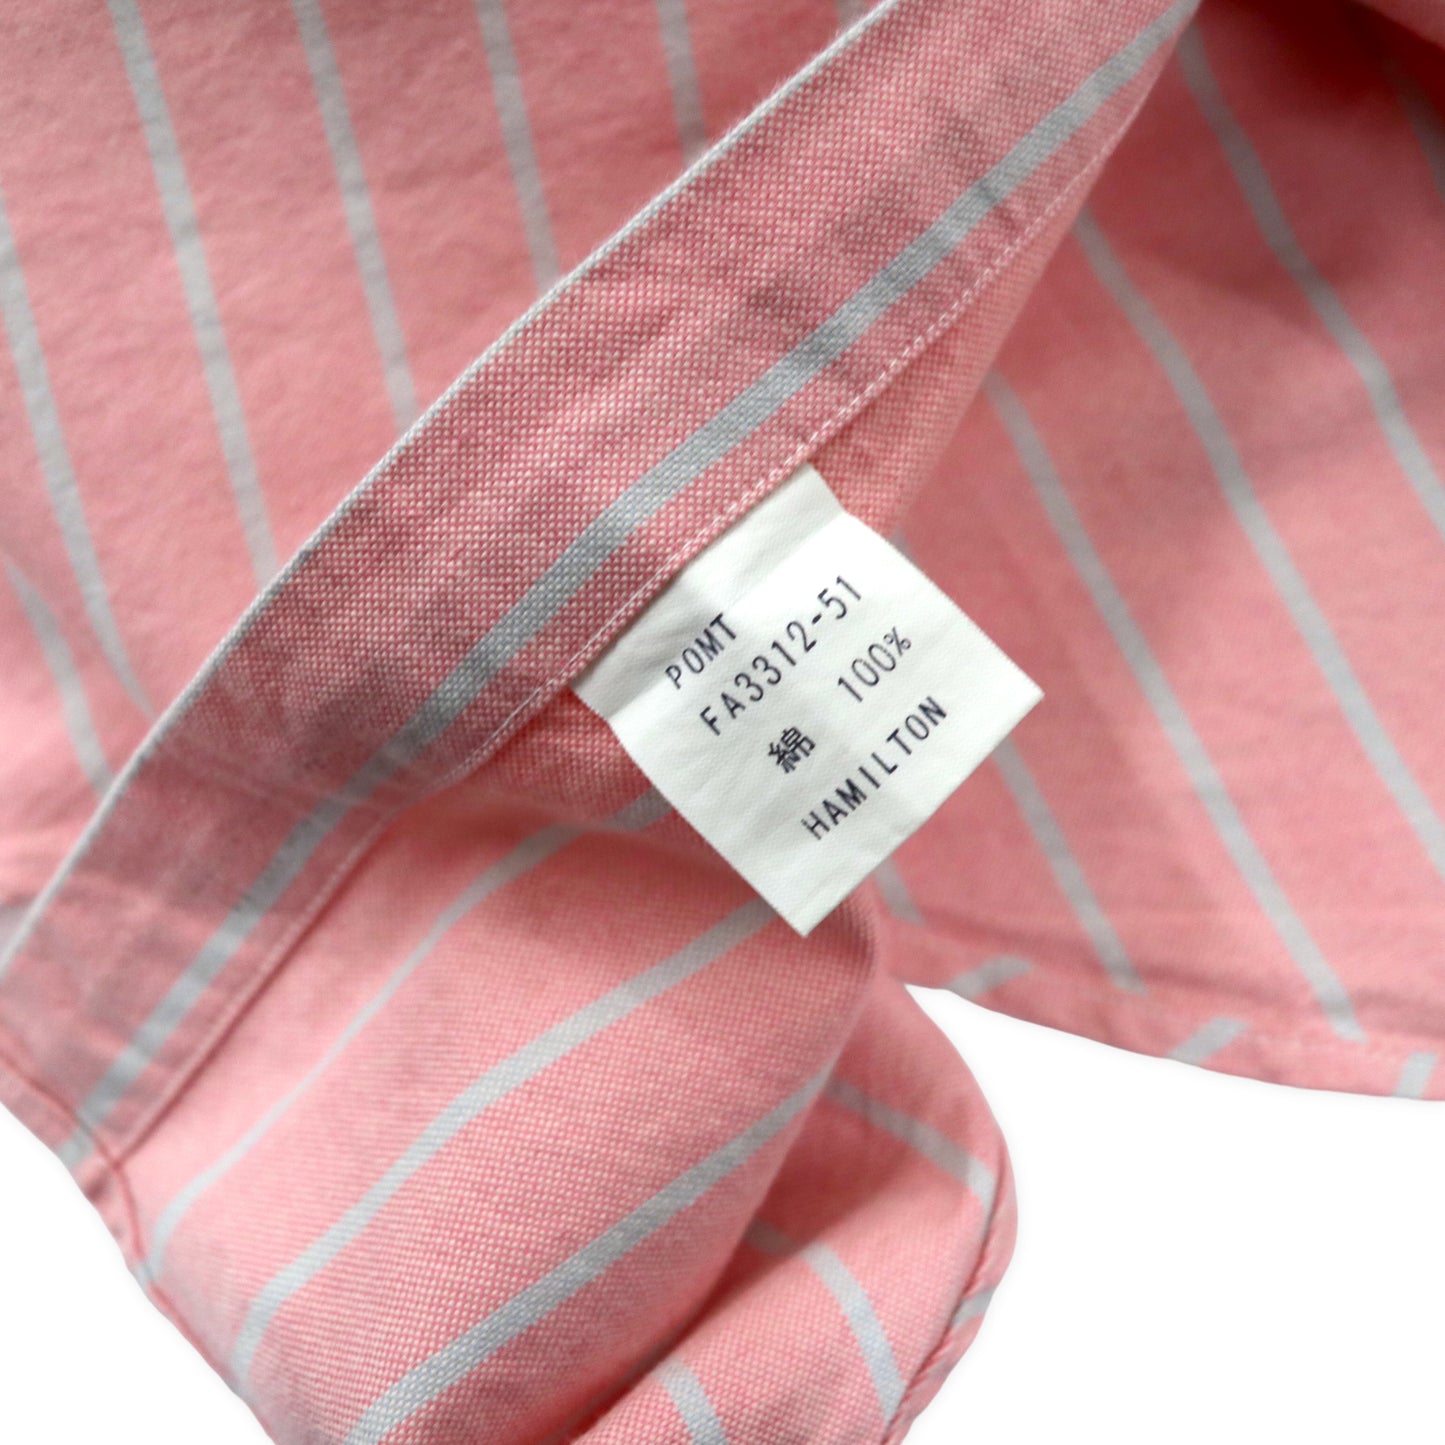 Polo by Ralph Lauren オックスフォード ボタンダウンシャツ M ピンク ストライプ コットン スモールポニー刺繍